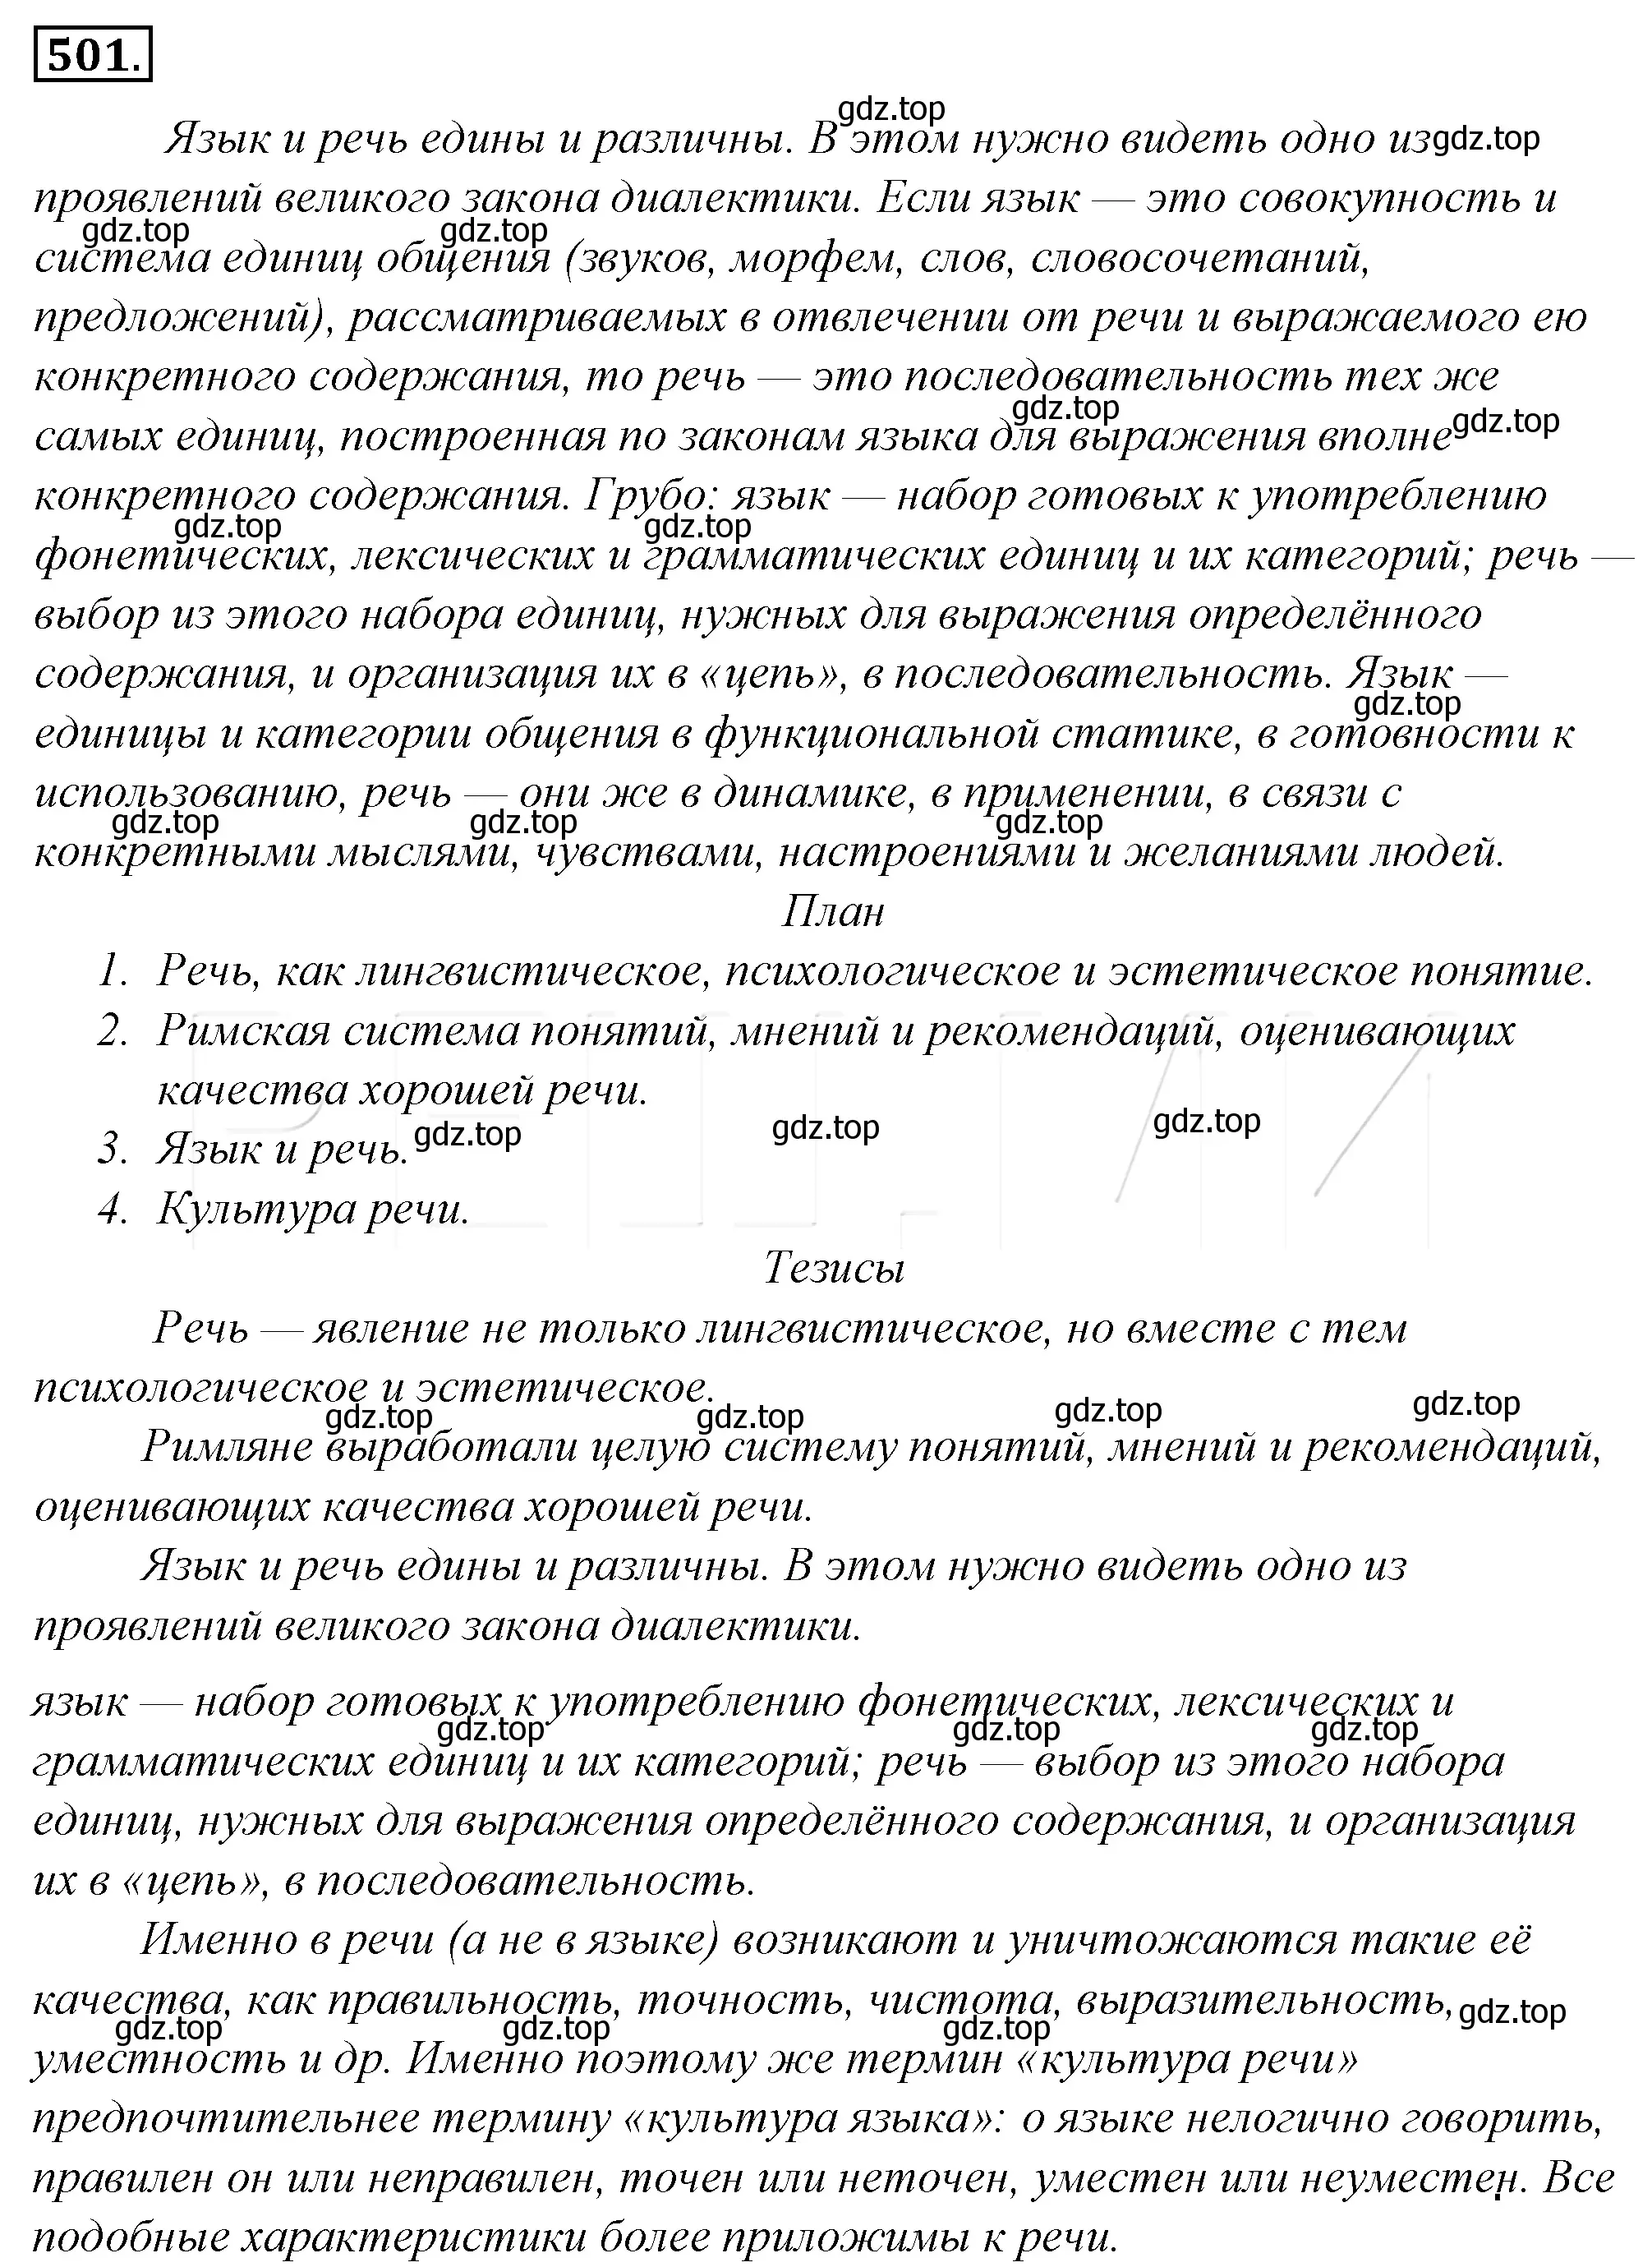 Решение 4. номер 166 (страница 233) гдз по русскому языку 10-11 класс Гольцова, Шамшин, учебник 2 часть